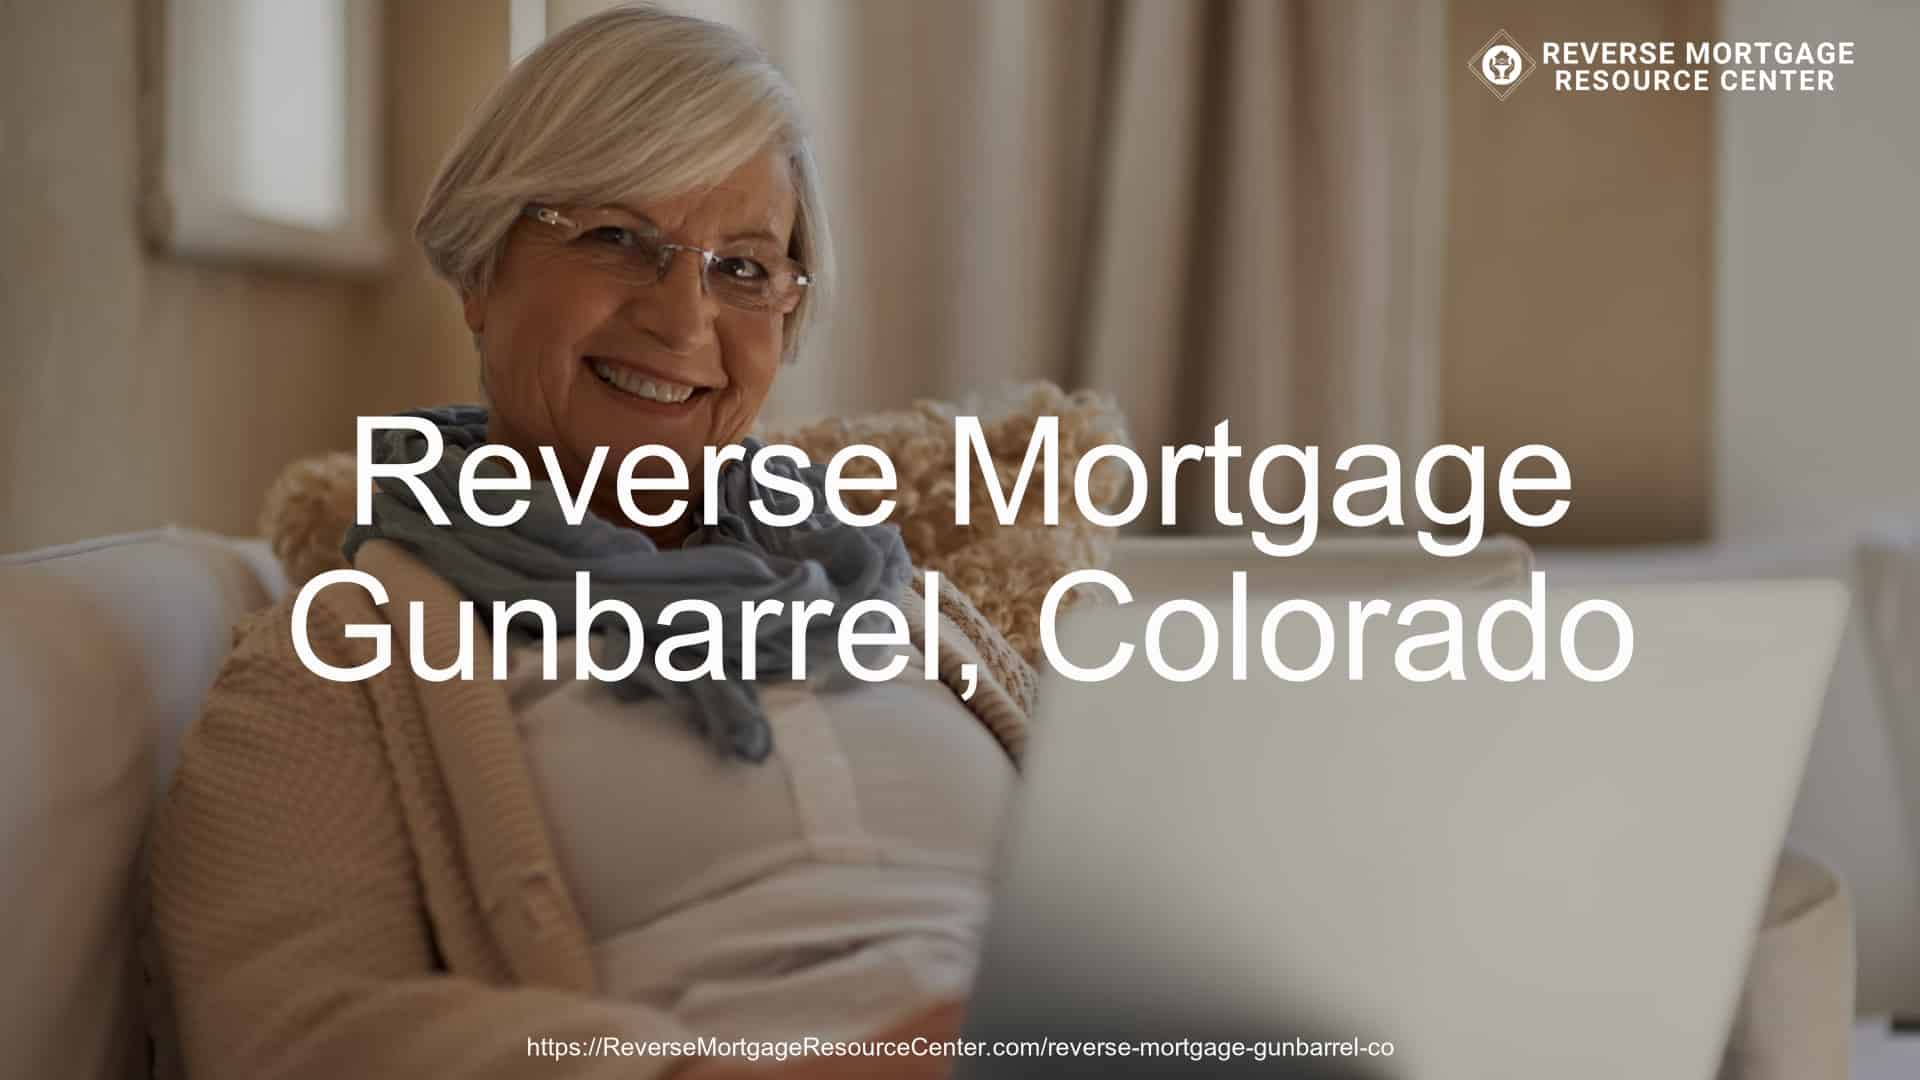 Reverse Mortgage Loans in Gunbarrel Colorado